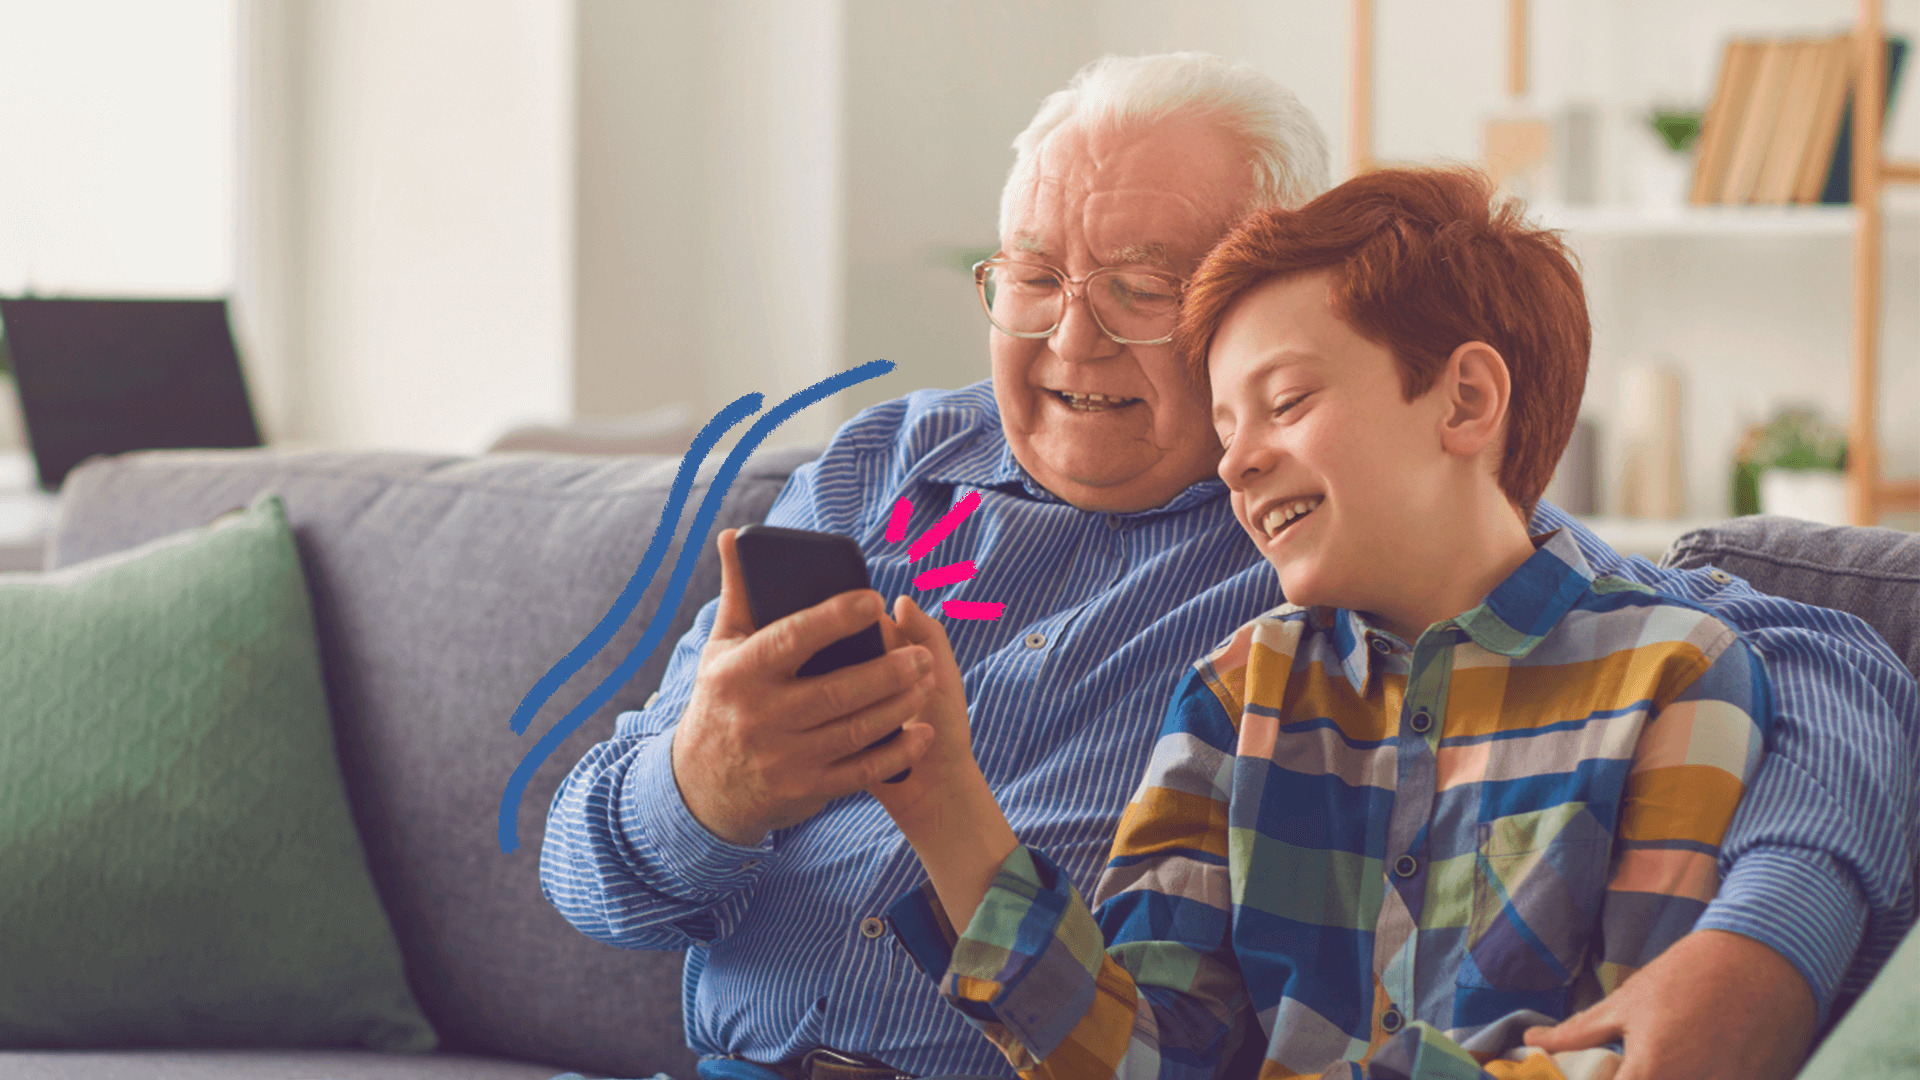 Um homem idoso de cabelos brancos e camisa azul divide com um menino ruivo de camiseta listrada a tela de um celular. Os dois estão sentados num sofá cinza. A matéria fala sobre a resolução do Conanda e a proteção de crianças no ambiente digital.